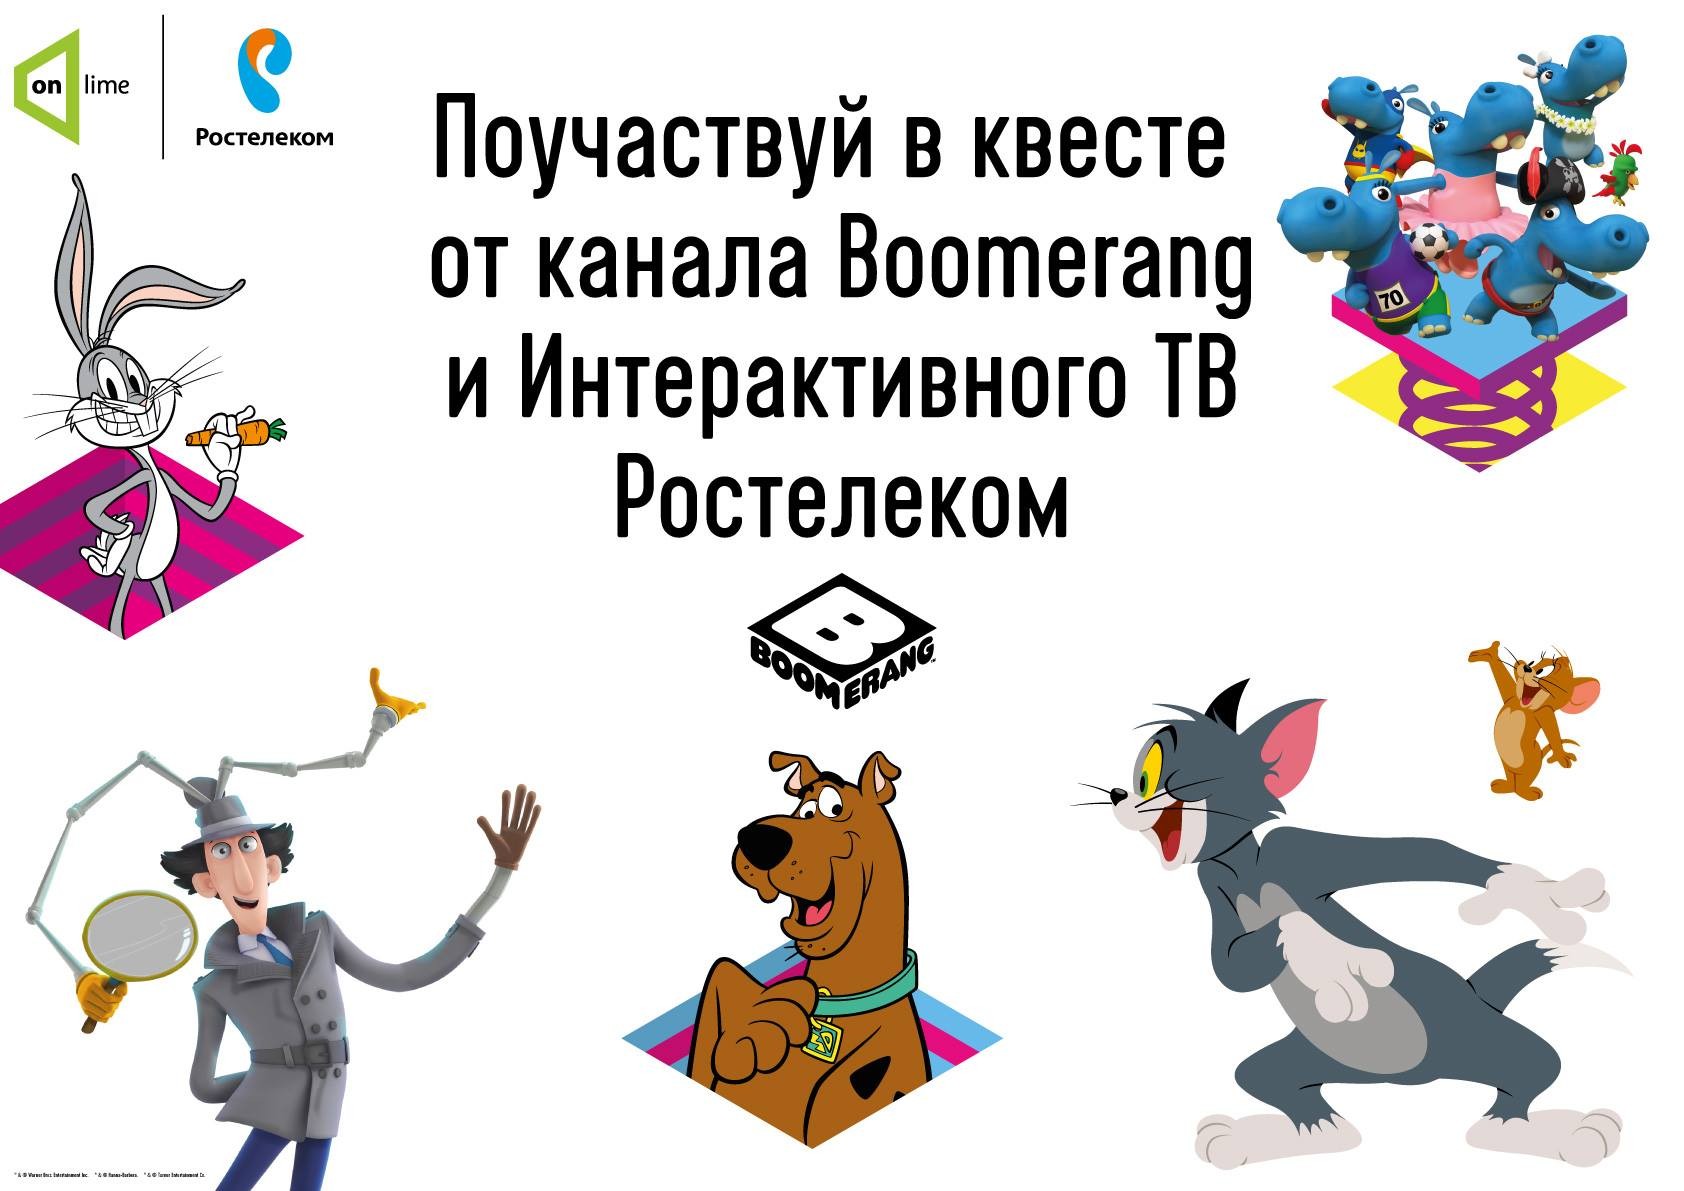 Герои мультфильмов оживут в Московском зоопарке: телеканал Boomerang и «Ростелеком» приглашают на семейный квест